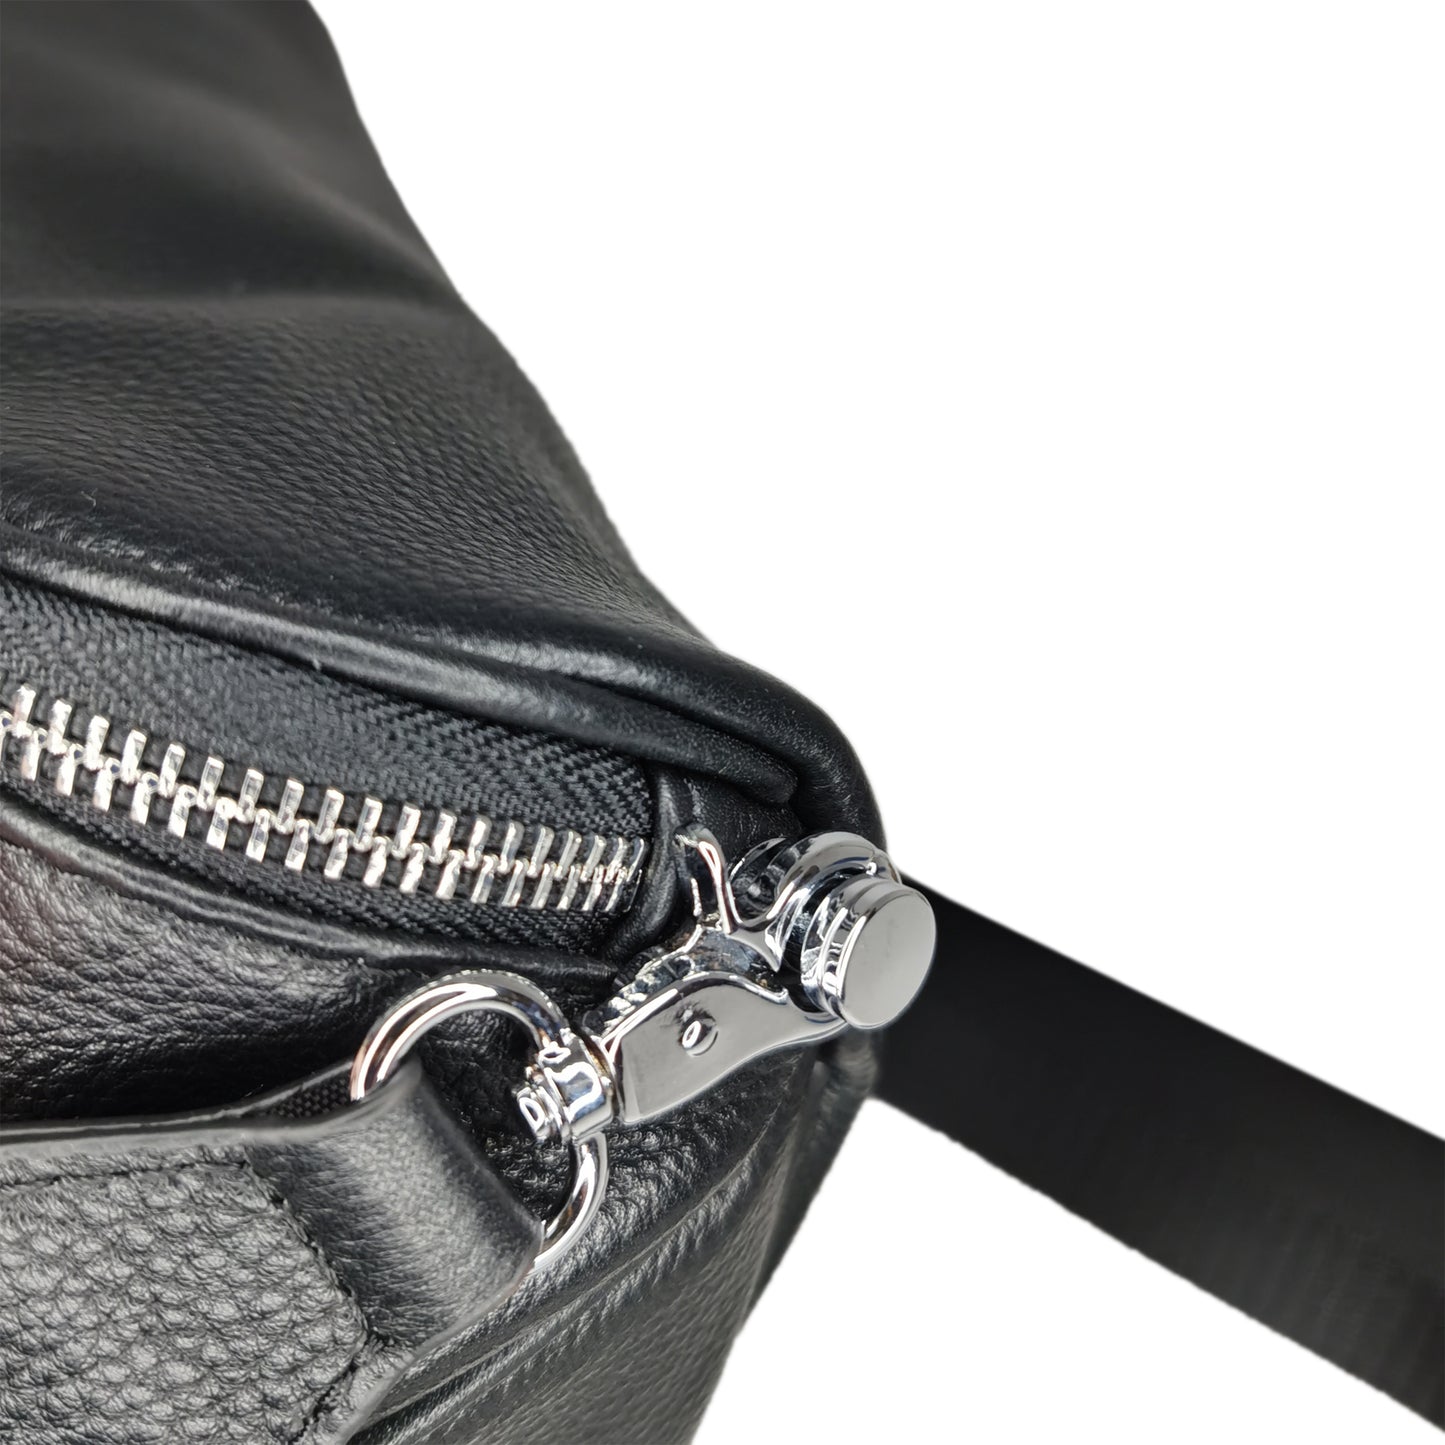 Unisex Men's and Women's genuine cowhide leather handbag Tilo V3 design camera bag